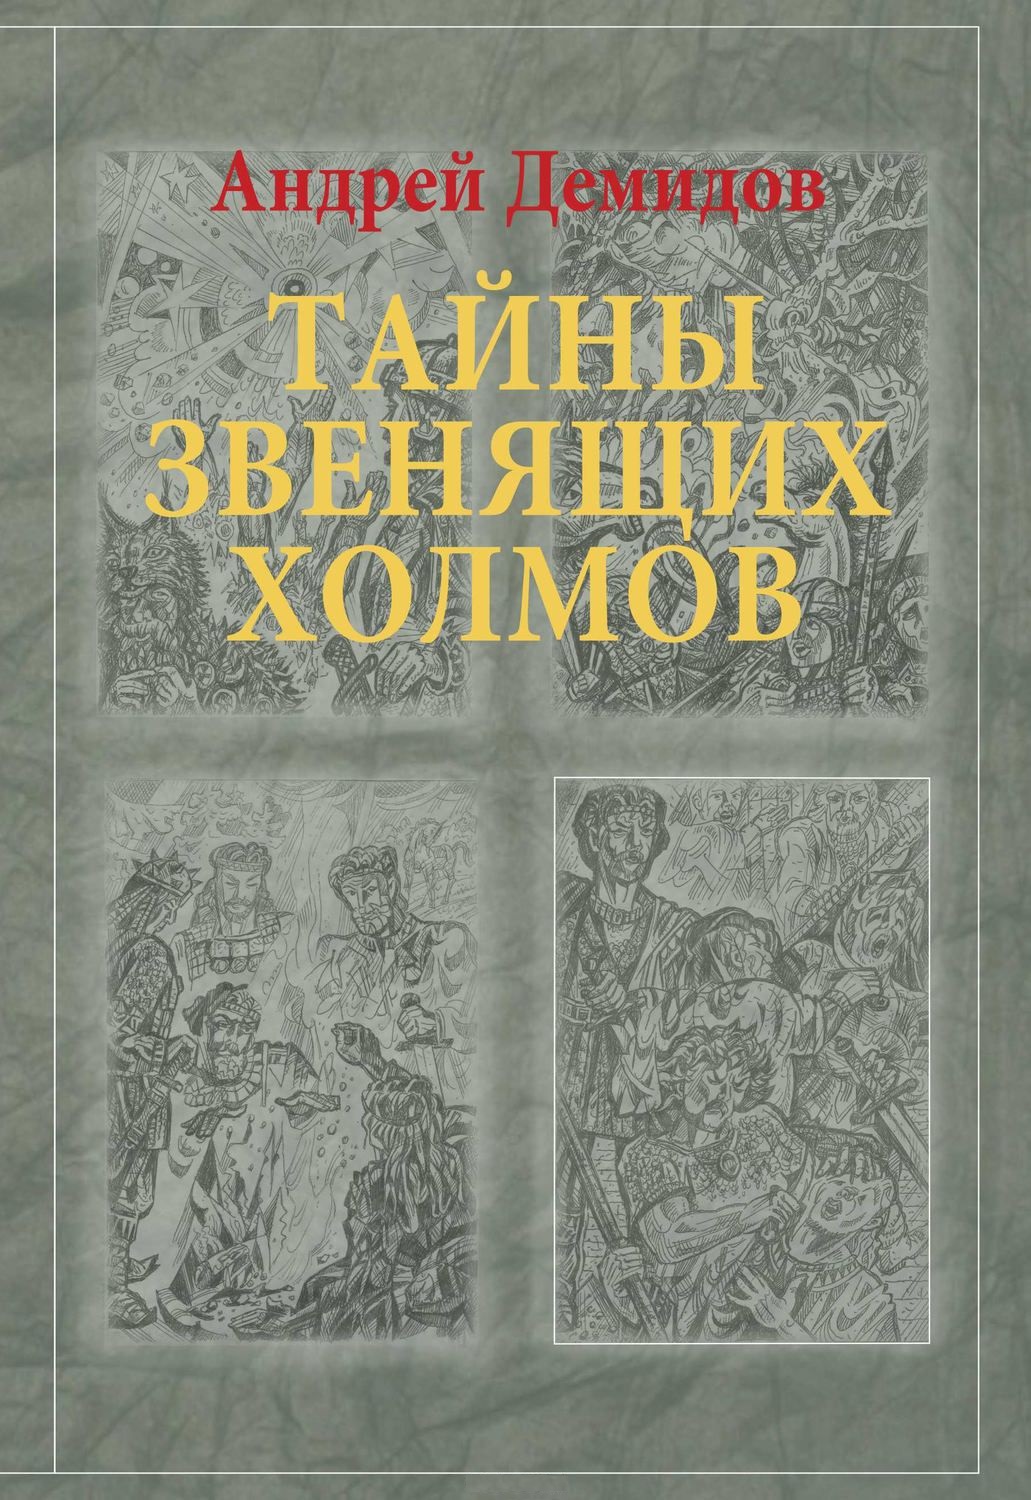 Демидов Андрей Г. Тайны Звенящих холмов: роман